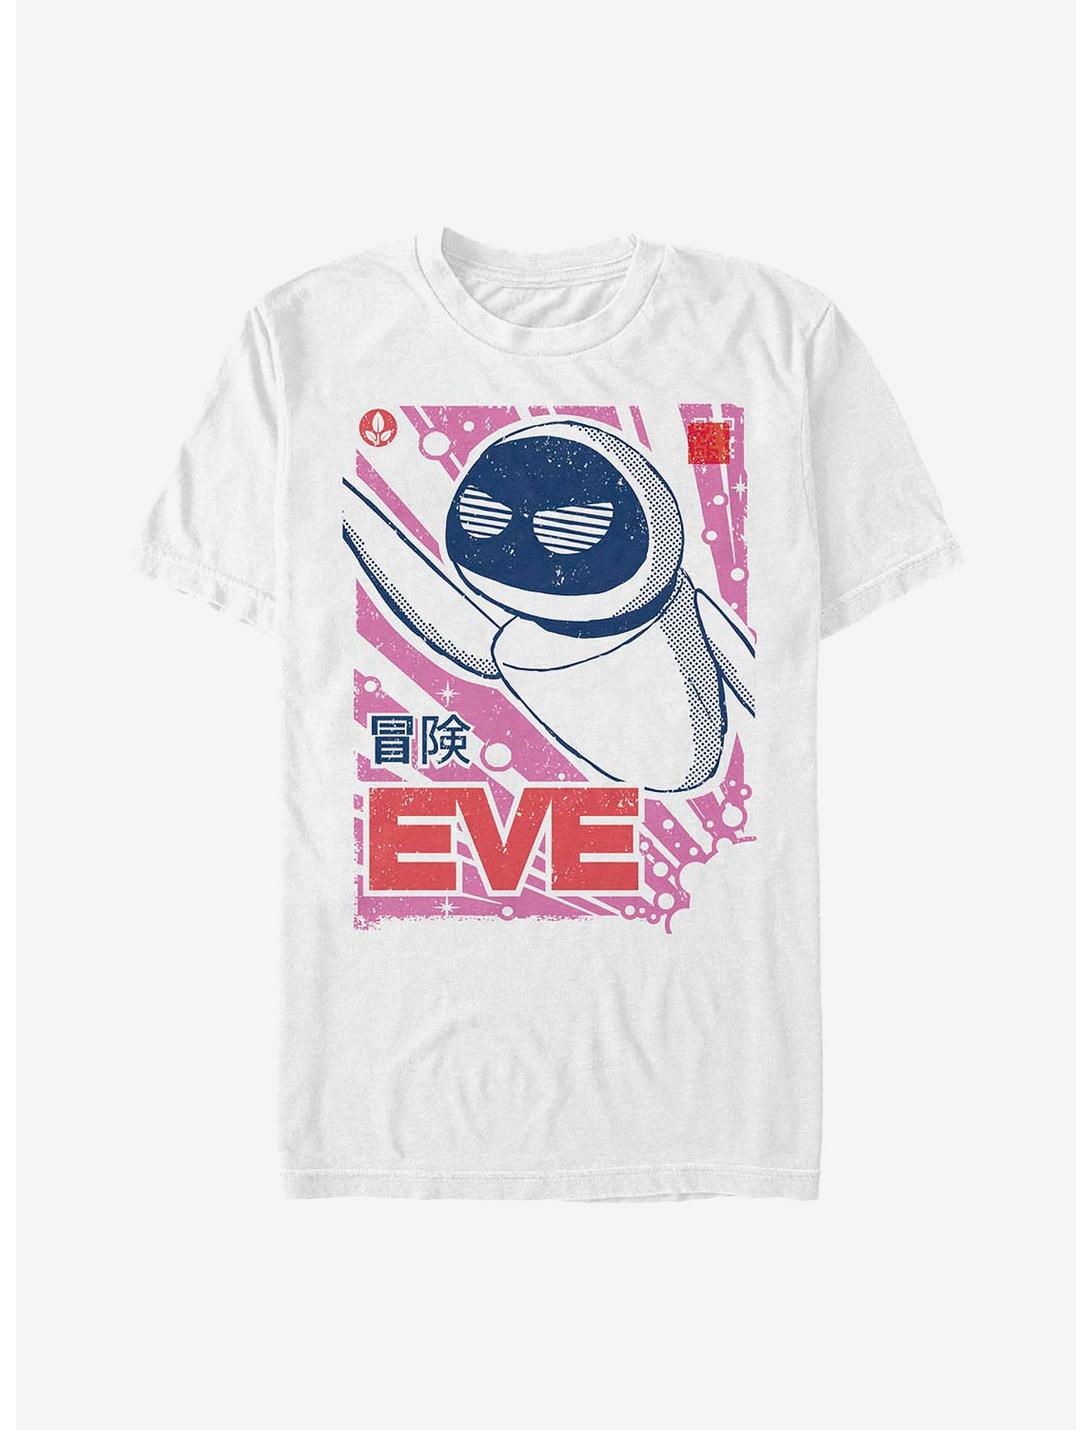 Disney Pixar Eve Manga T-Shirt, WHITE, hi-res